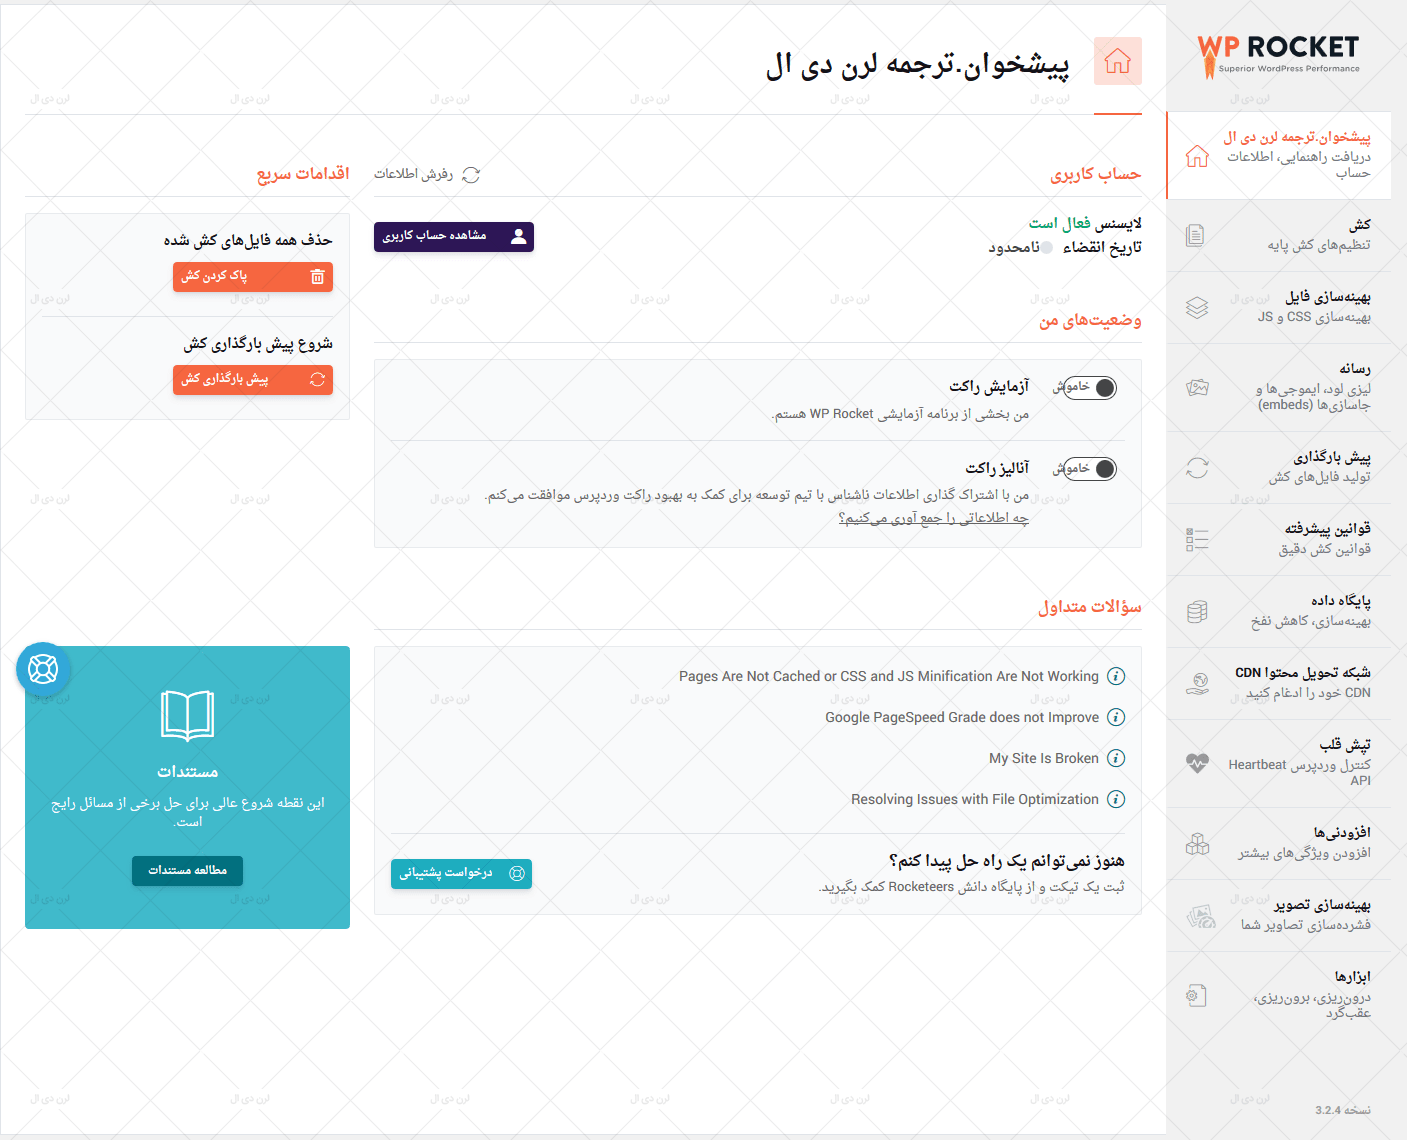 بخش تنظیمات افزونه راکت نسخه فارسی سازی شده توسط سایت لرن دی ال